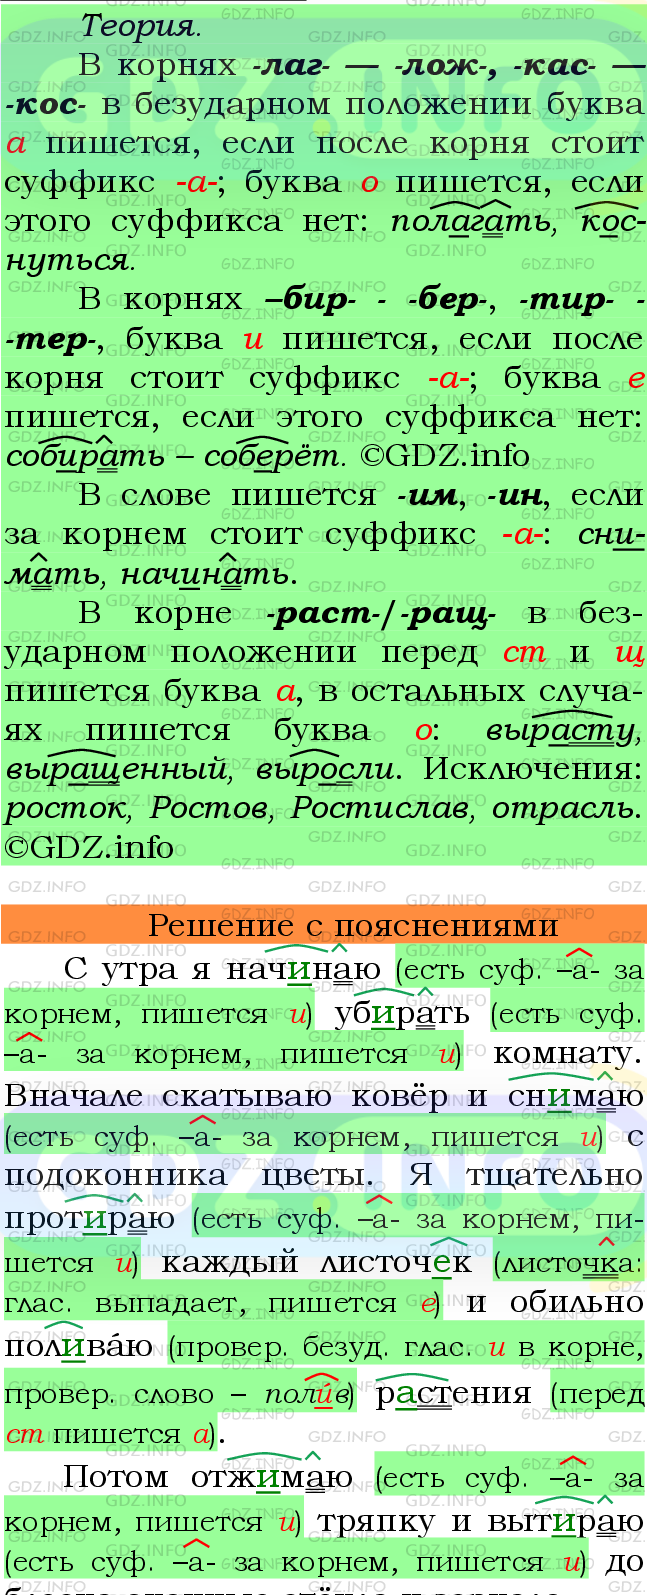 Фото подробного решения: Номер №640 из ГДЗ по Русскому языку 6 класс: Ладыженская Т.А.